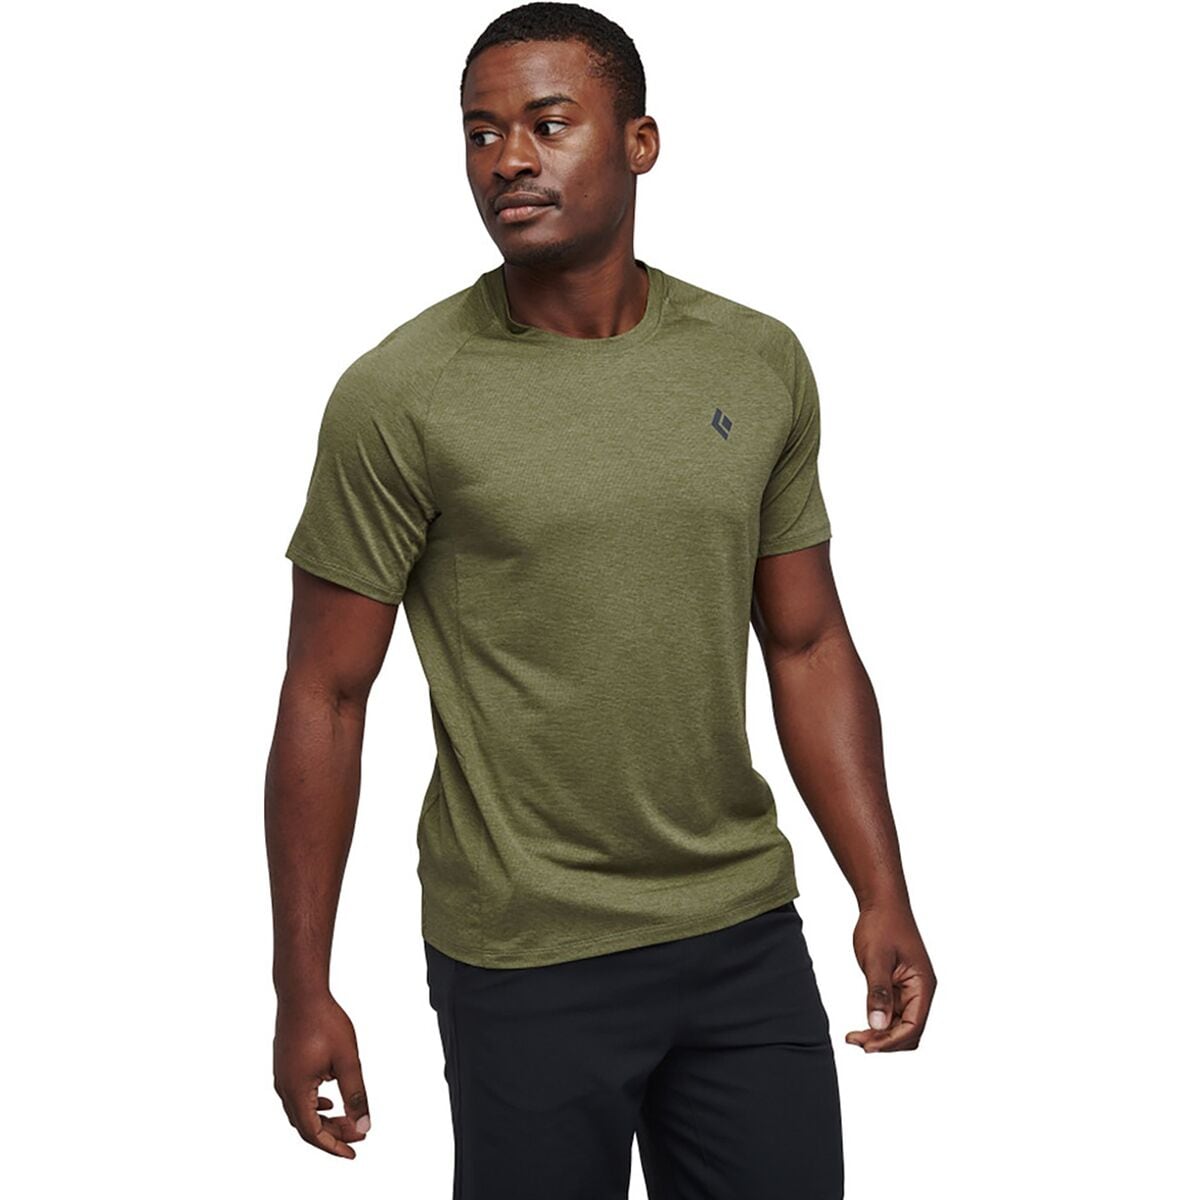 Lightwire Short-Sleeve Tech T-Shirt - Men